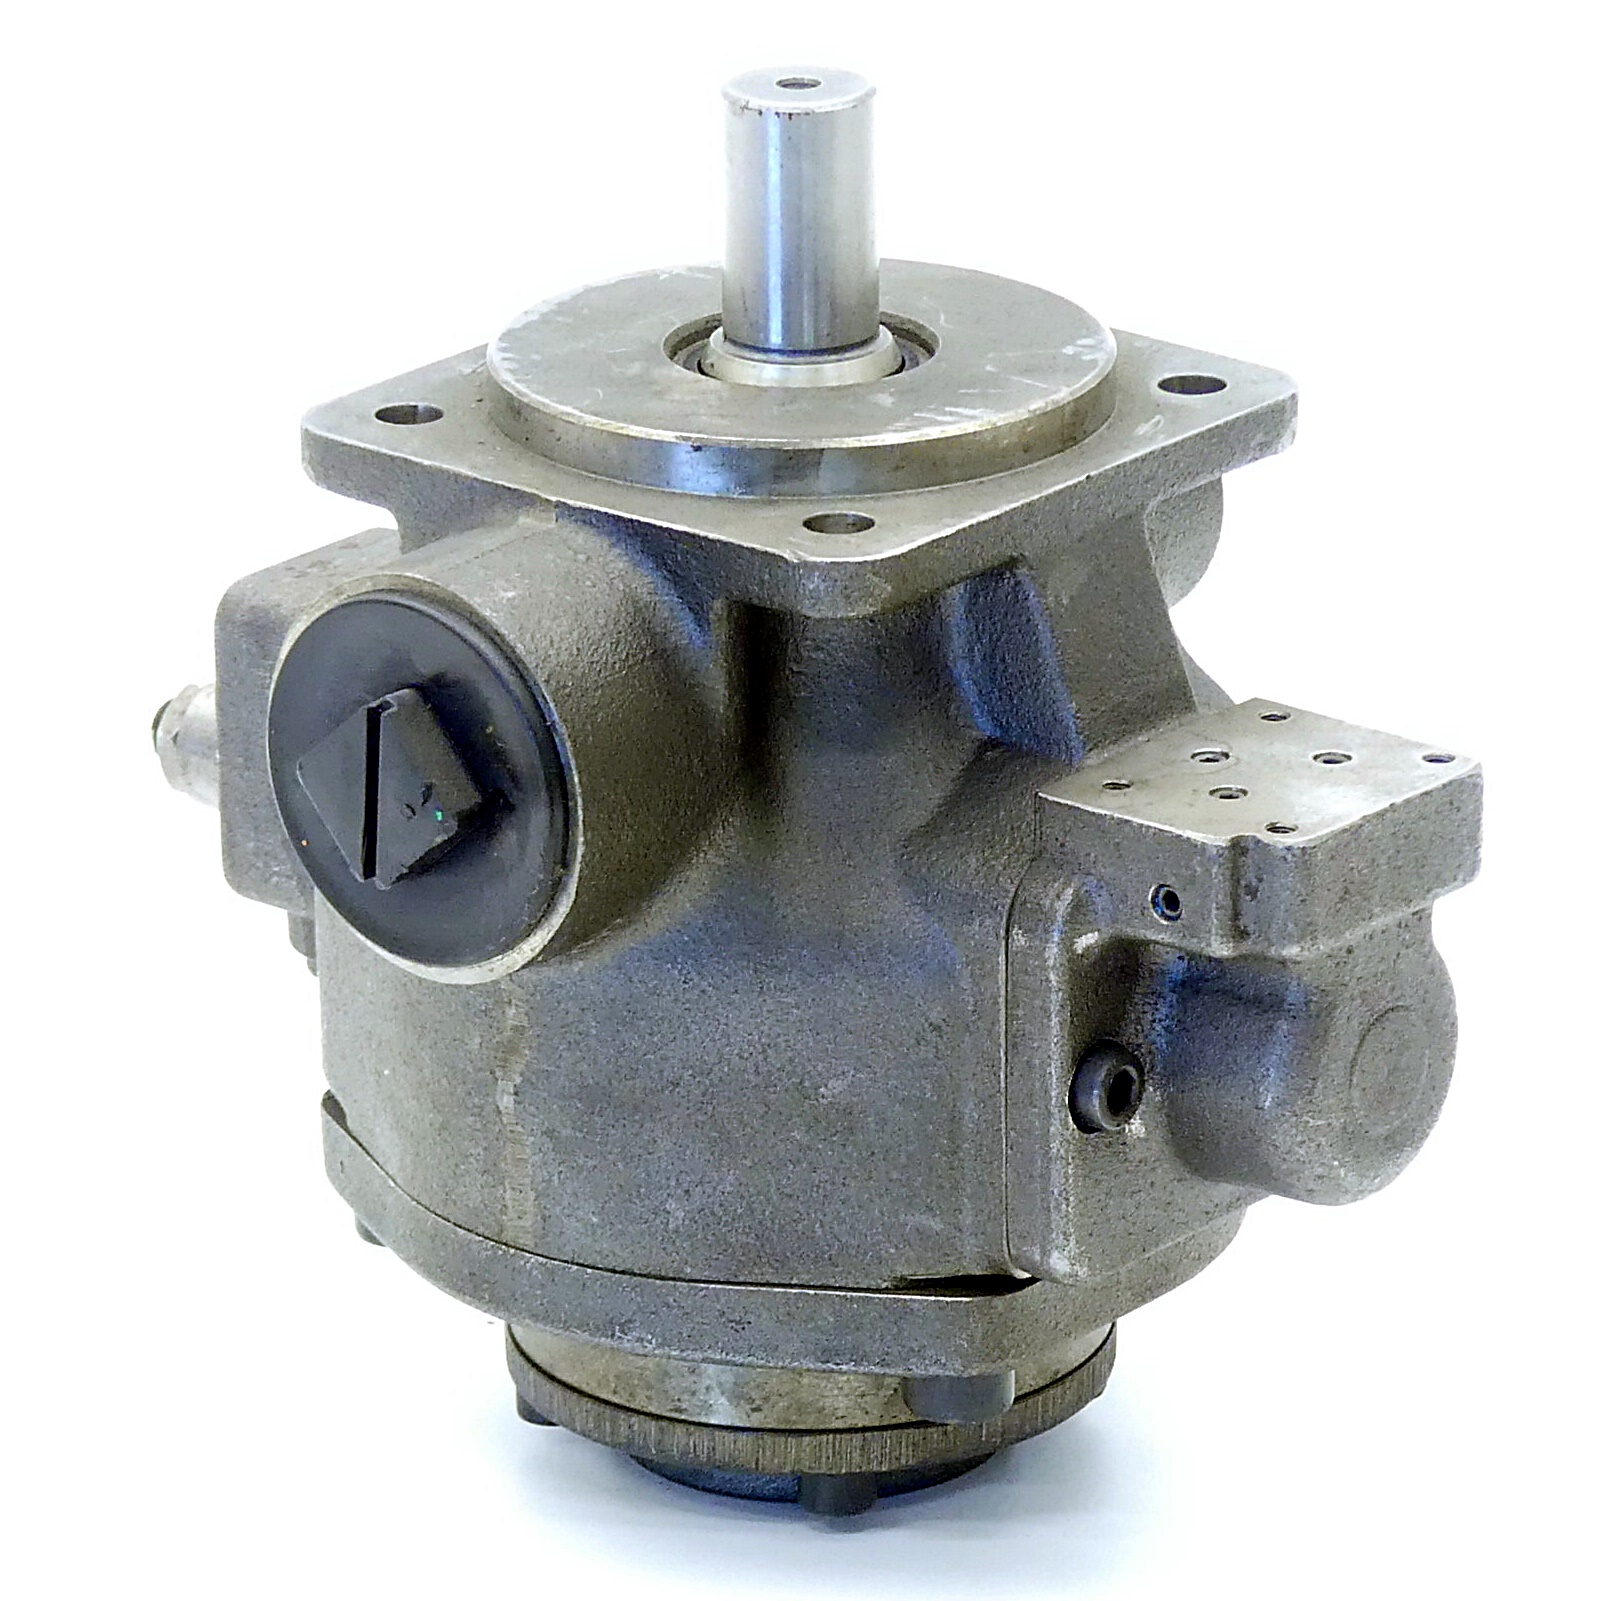 Hydraulic pump 1PF2V7-12/25-43RE01MZ0-07A0 